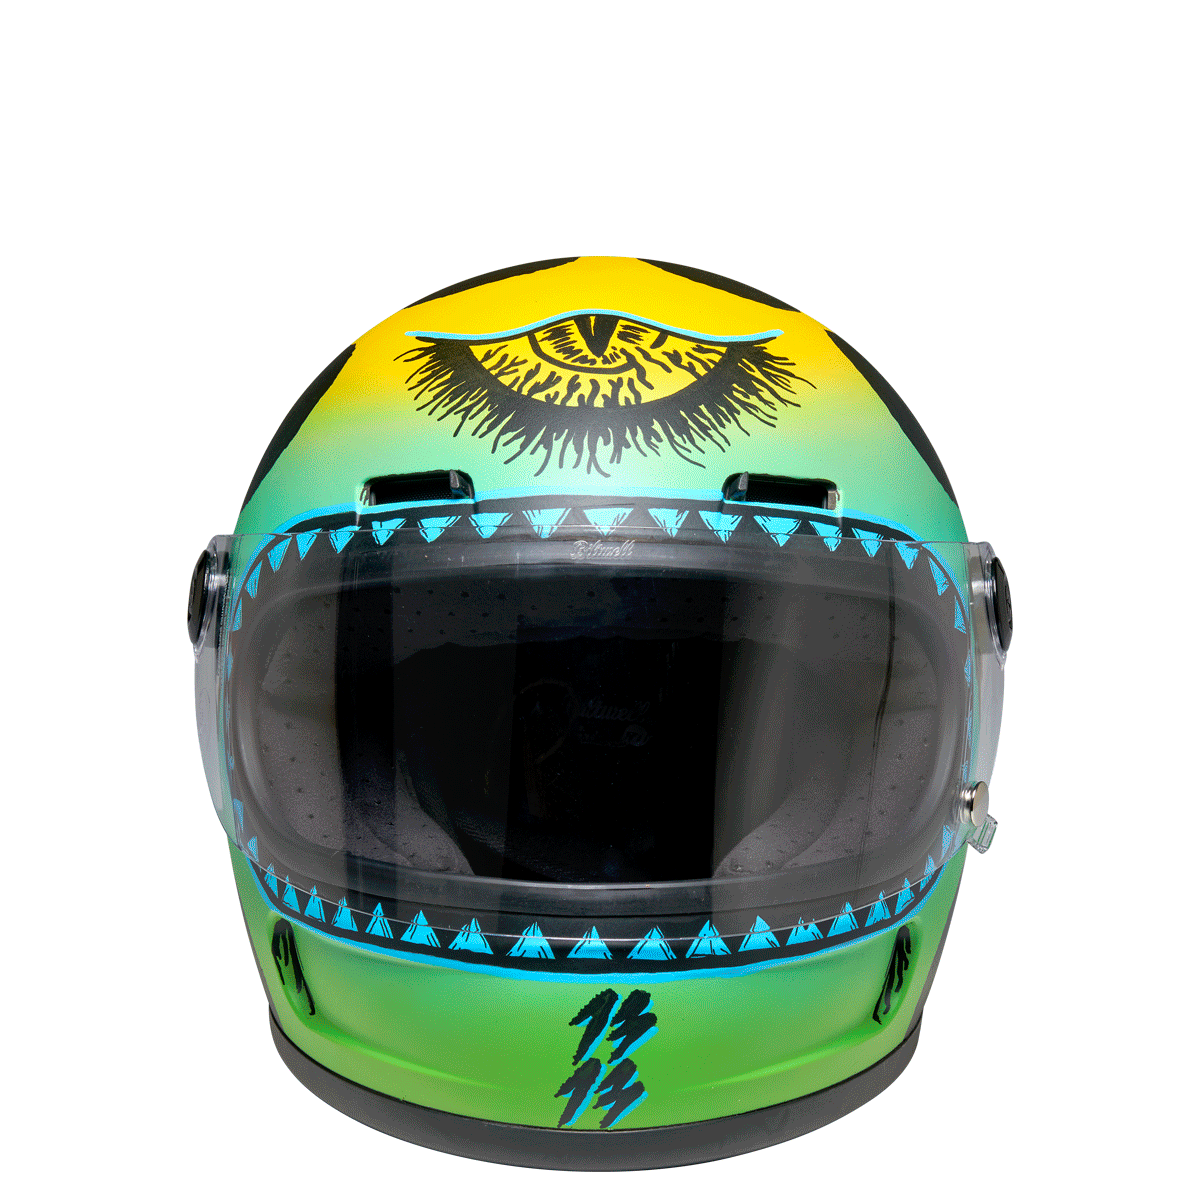 Custom Painted Gringo SV Helmet by Doug Werner